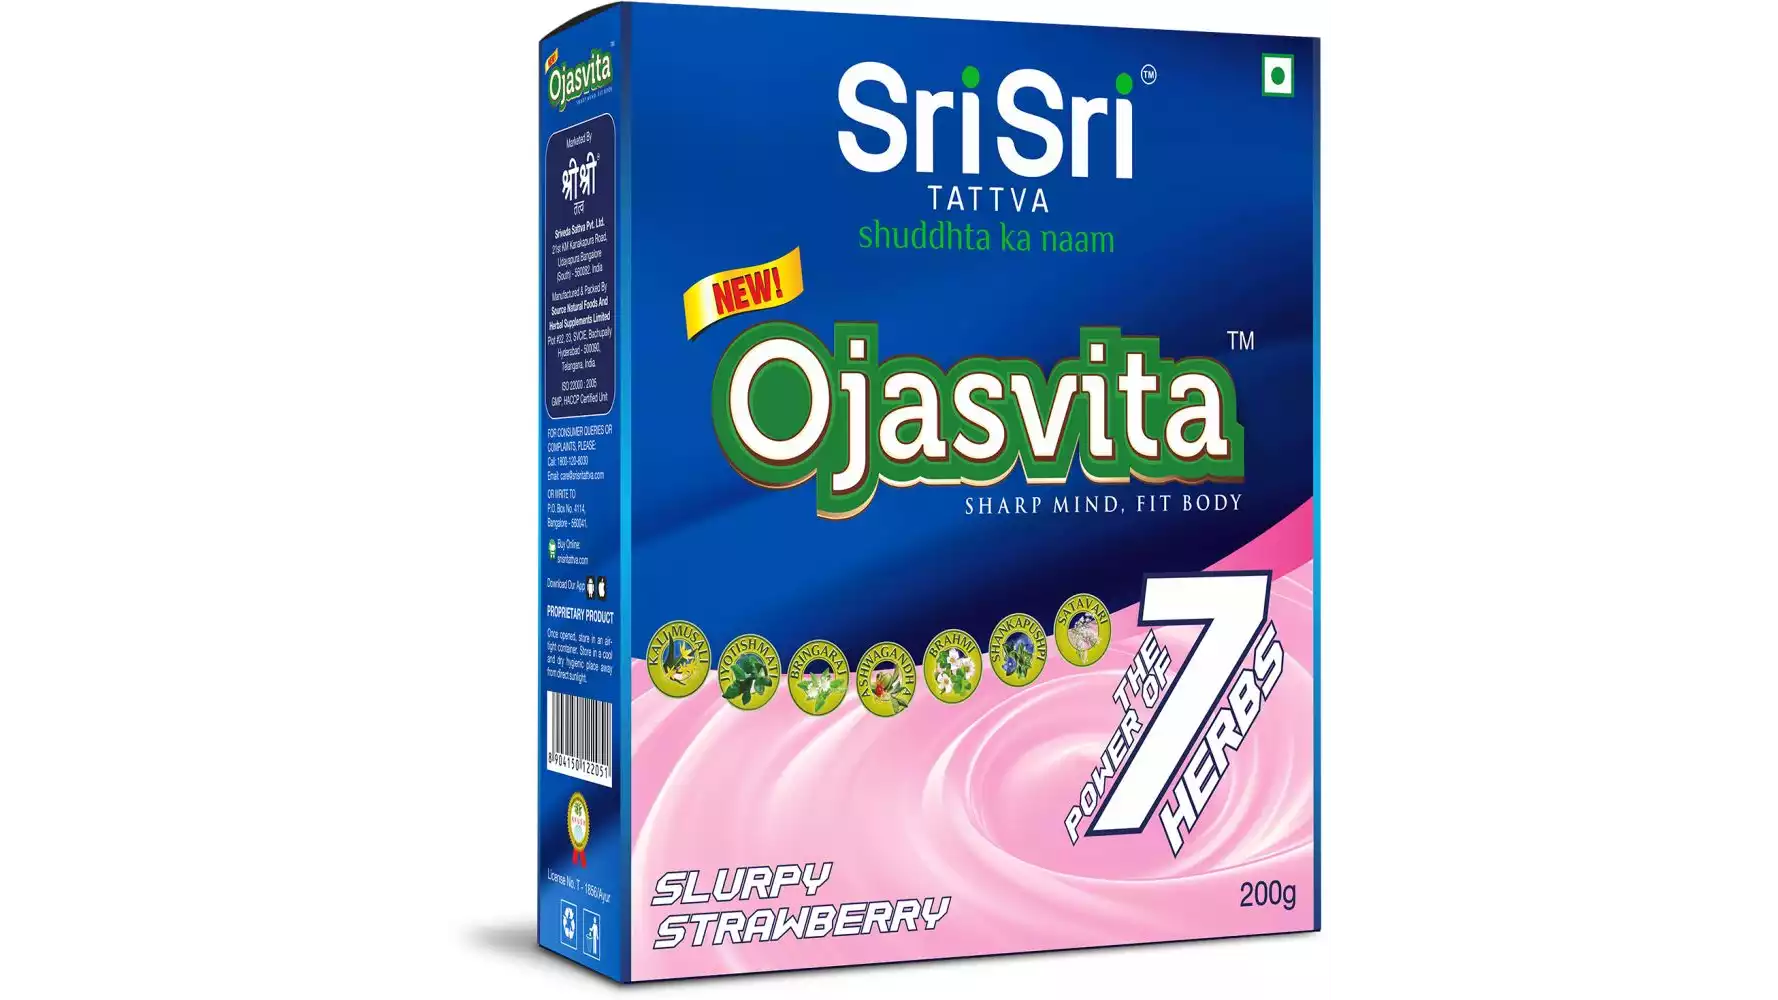 Sri Sri Tattva Ojasvita Strawberry Box Refill (200g)